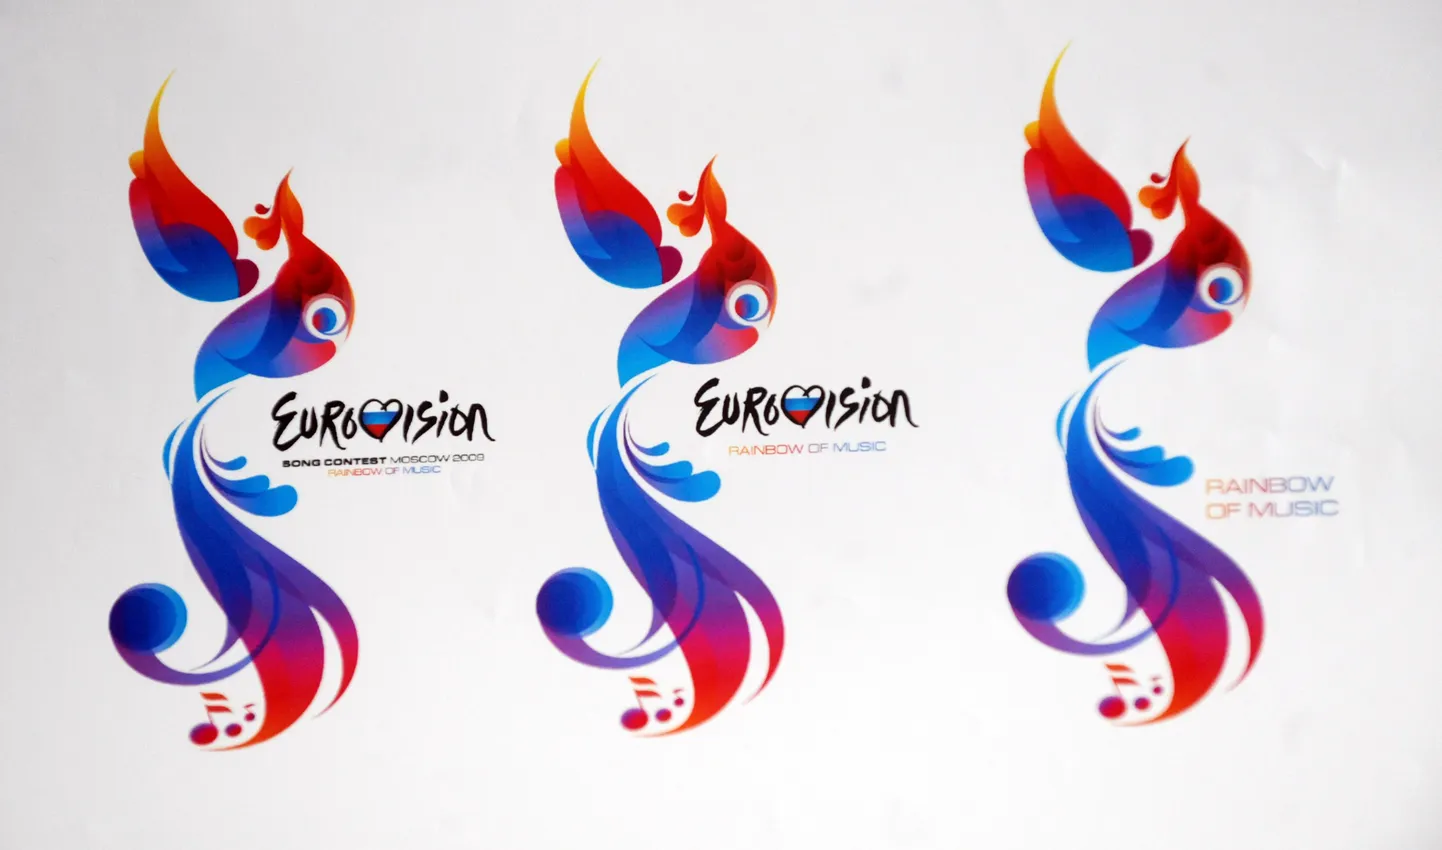 Eurovisiooni lauluvõistluse logo.